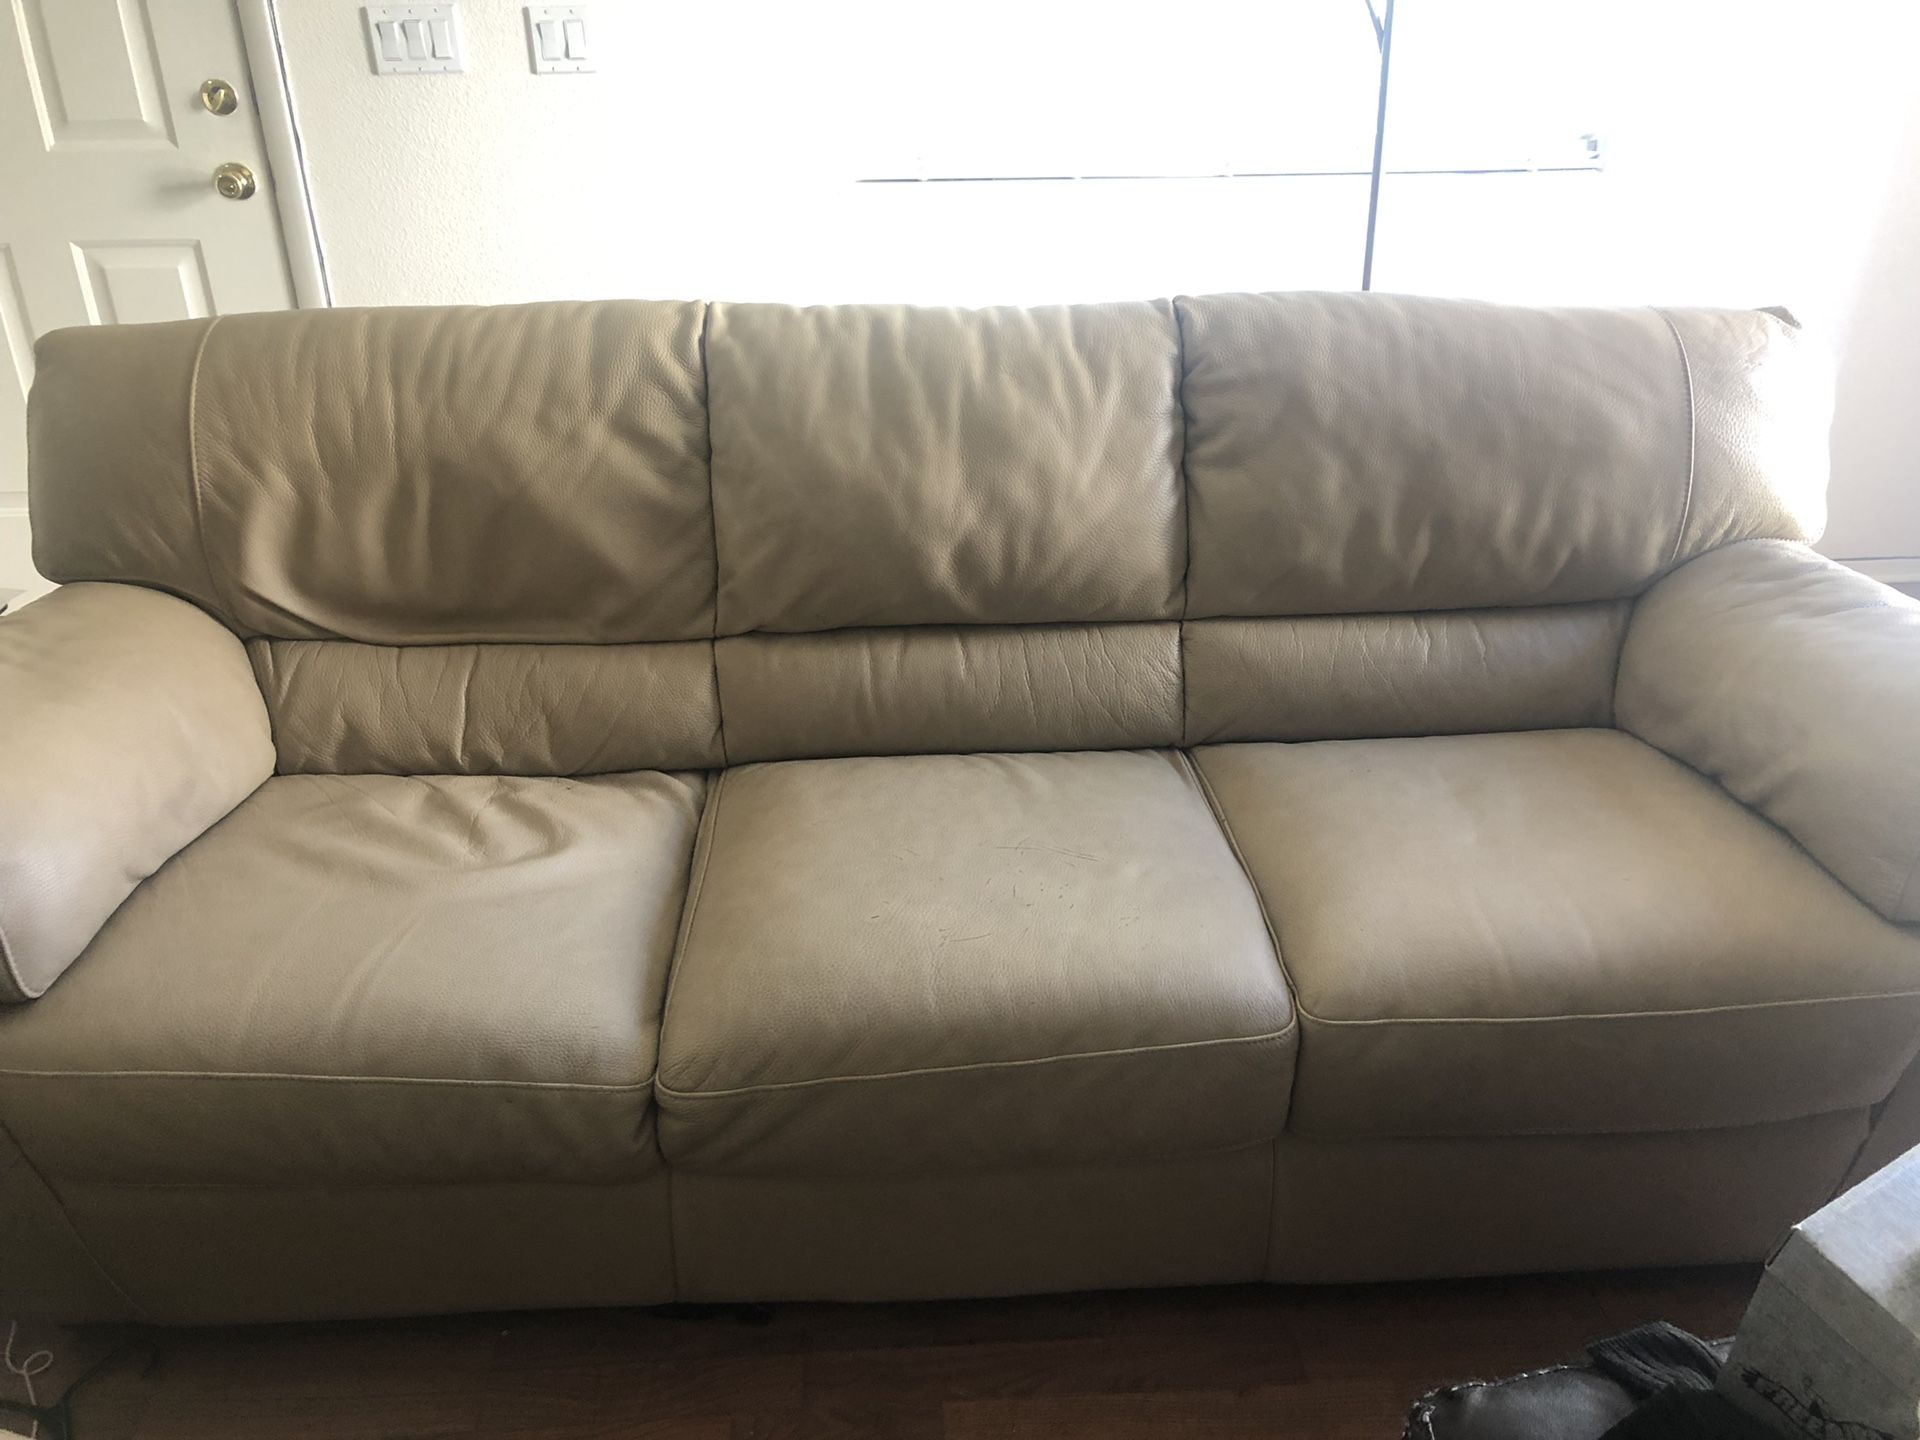 Beautiful Natuzzi Leather Couch, chair and matching ottoman